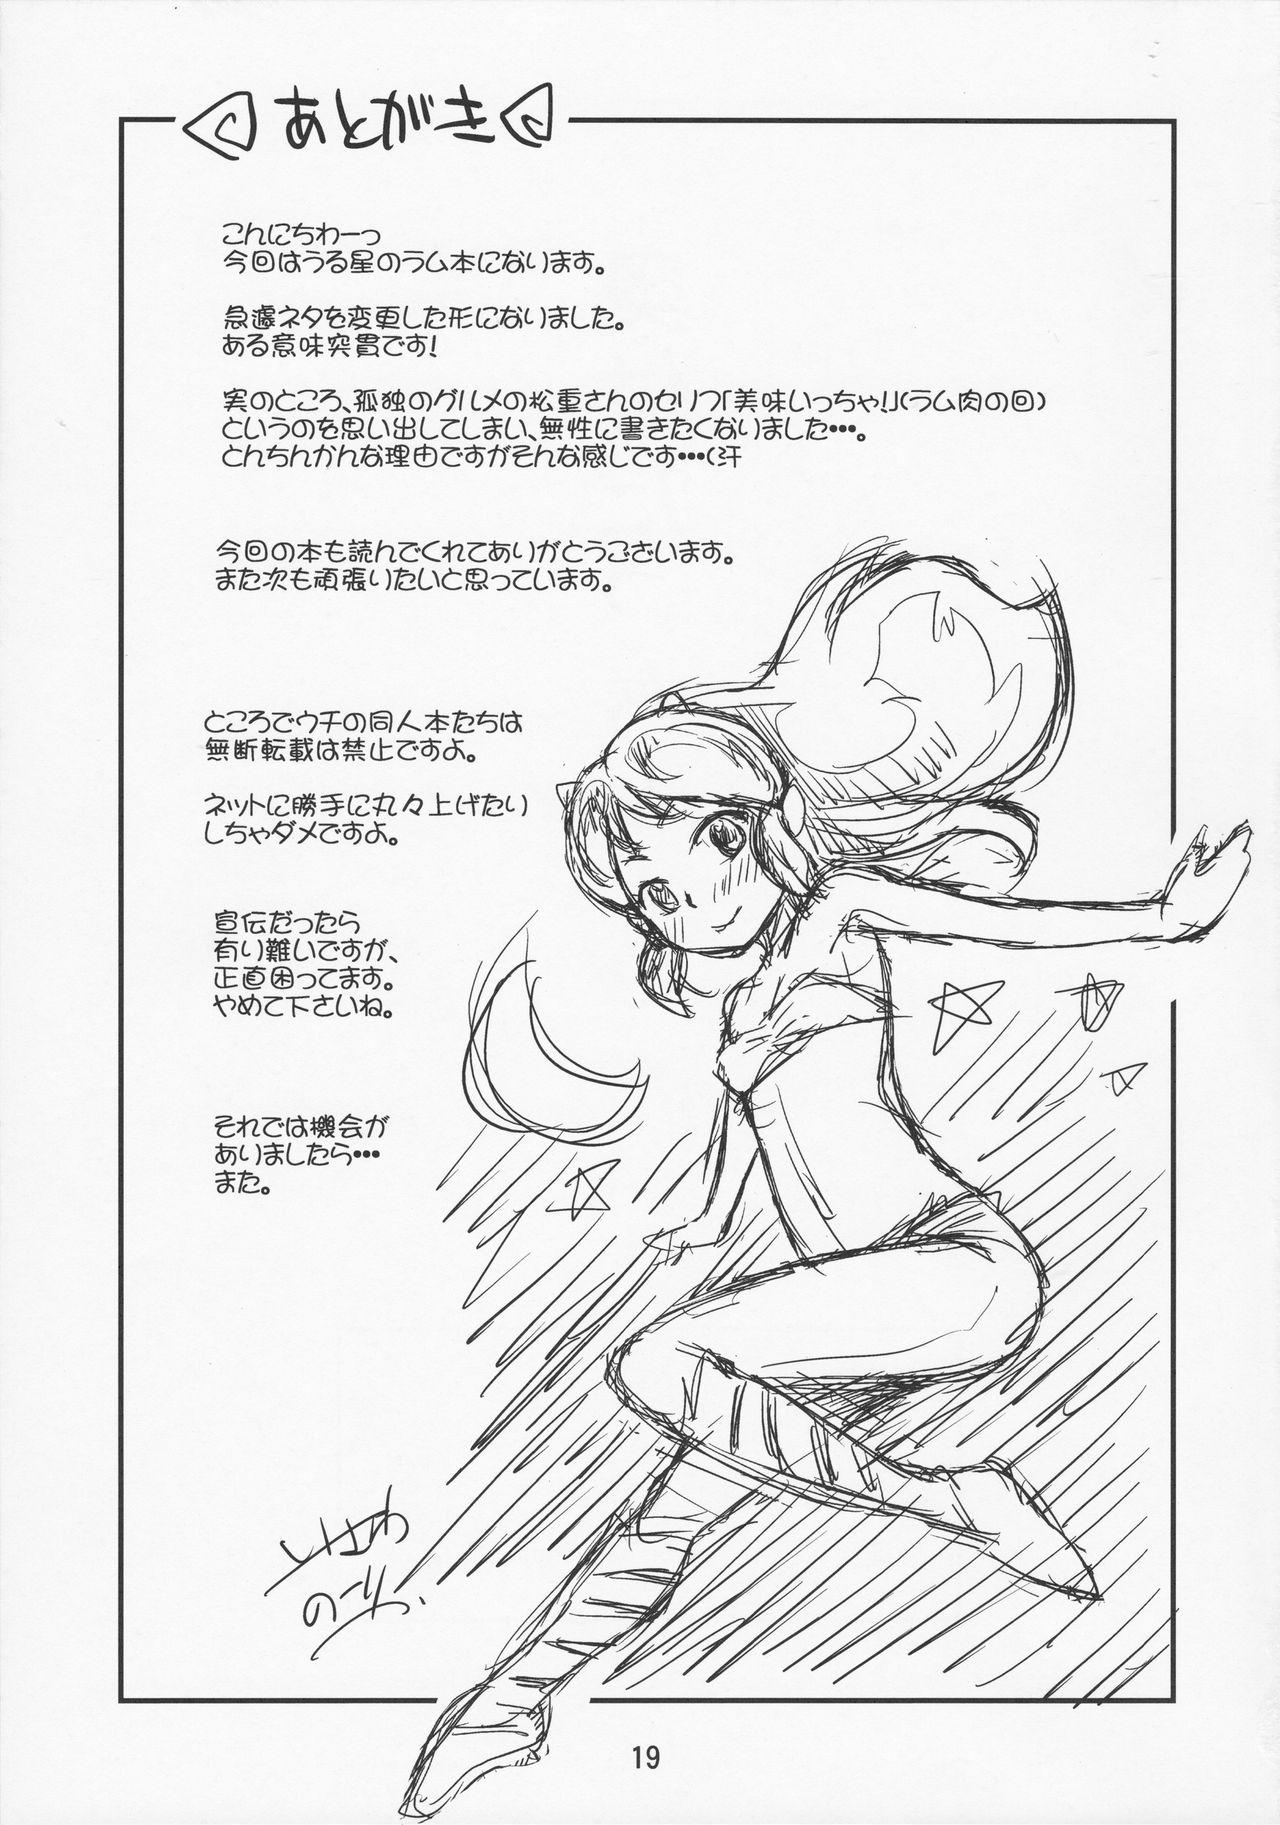 Anal Creampie Chibi Oni! - Urusei yatsura Brazil - Page 17